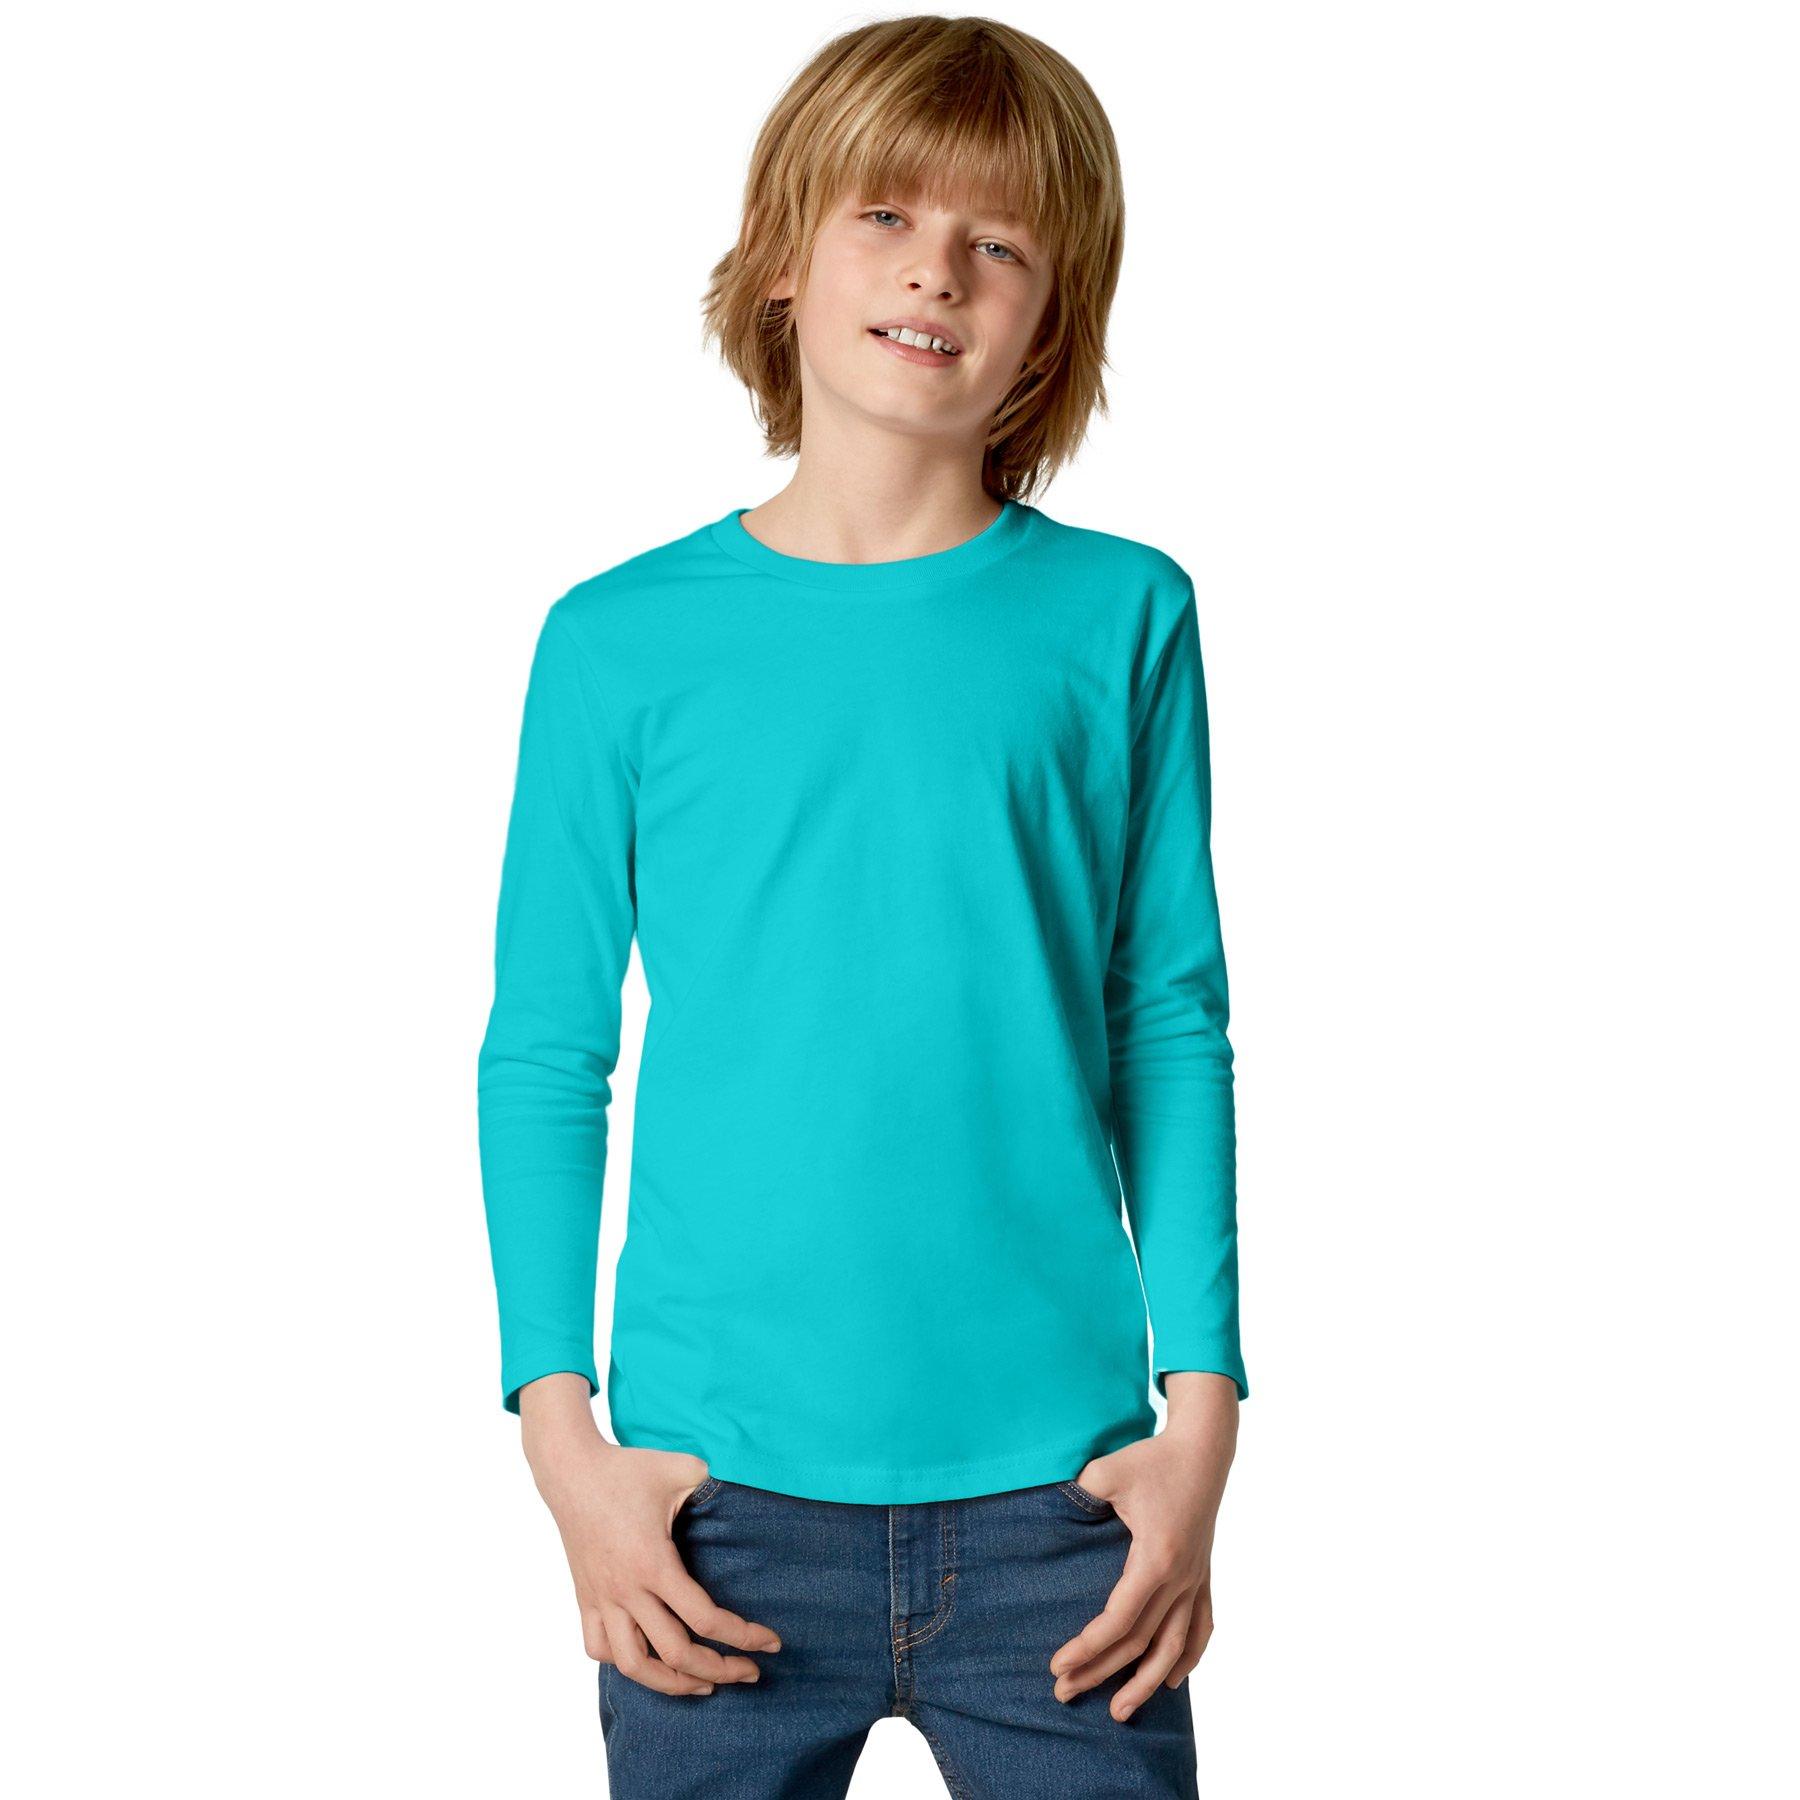 Langarm-shirt Kinder Jungen Türkisblau 104 von Tectake